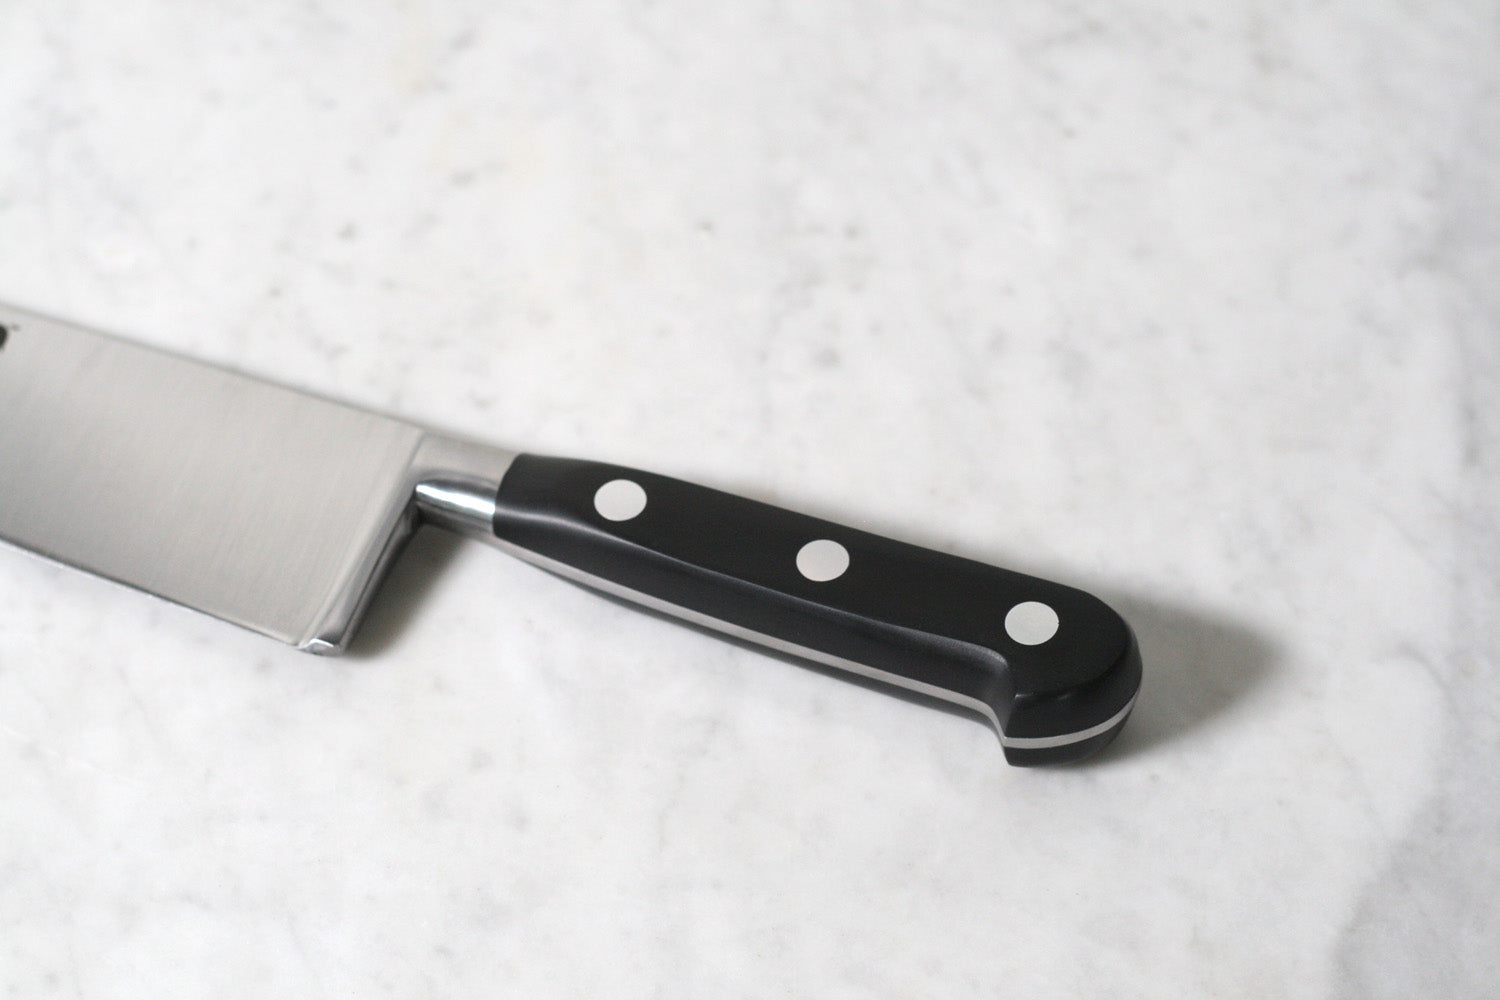 Sabatier 8 Chef's Knife Carbone Steel